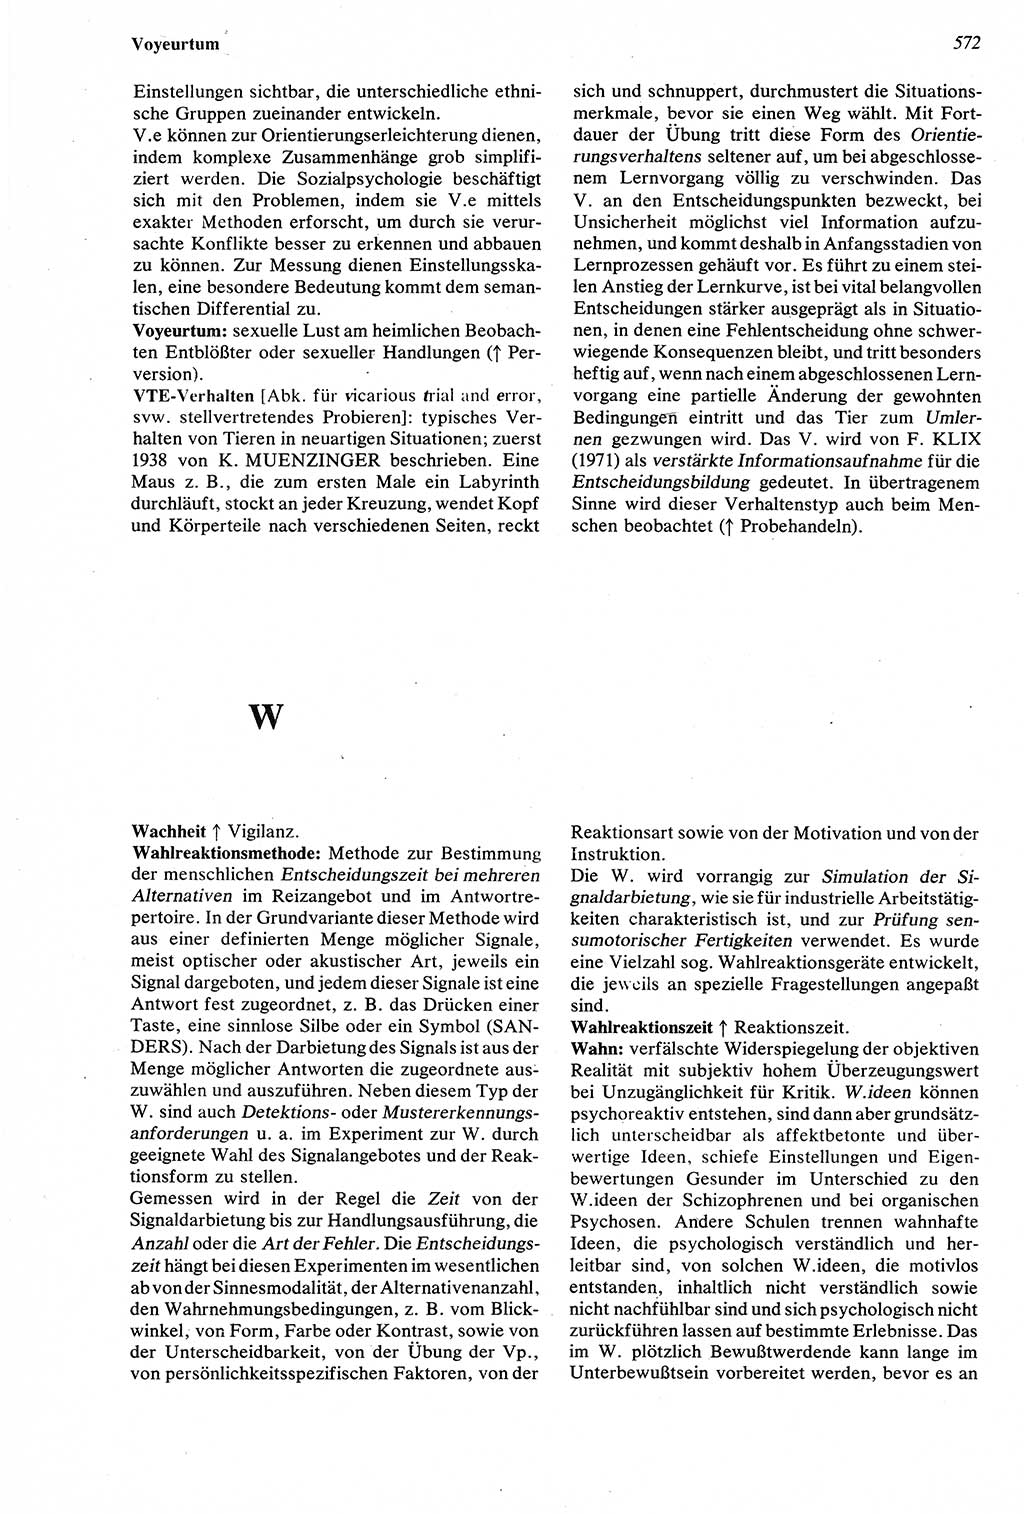 Wörterbuch der Psychologie [Deutsche Demokratische Republik (DDR)] 1976, Seite 572 (Wb. Psych. DDR 1976, S. 572)